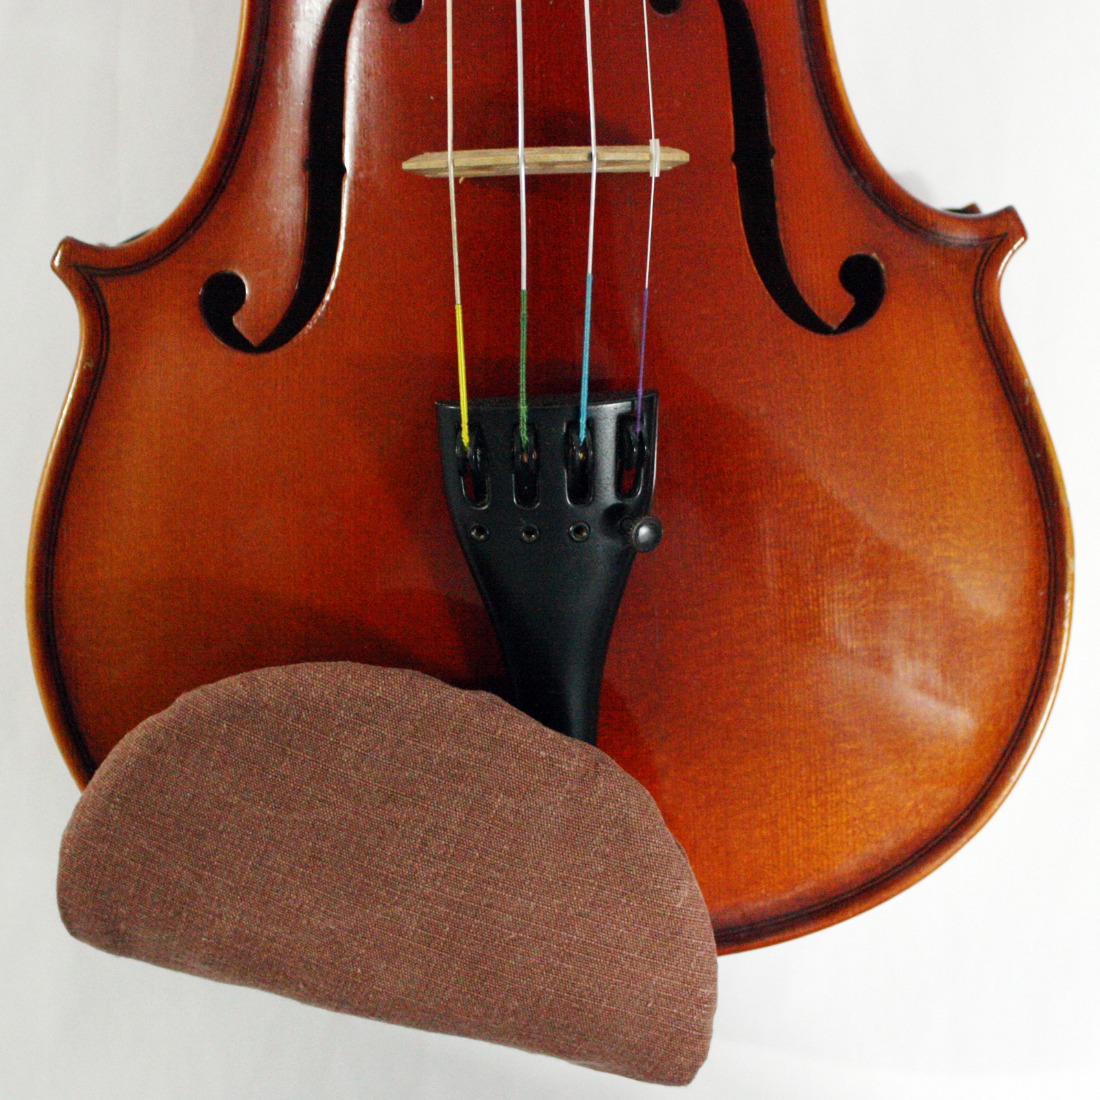 바이올린 턱받침 커버 센터형 Cno20